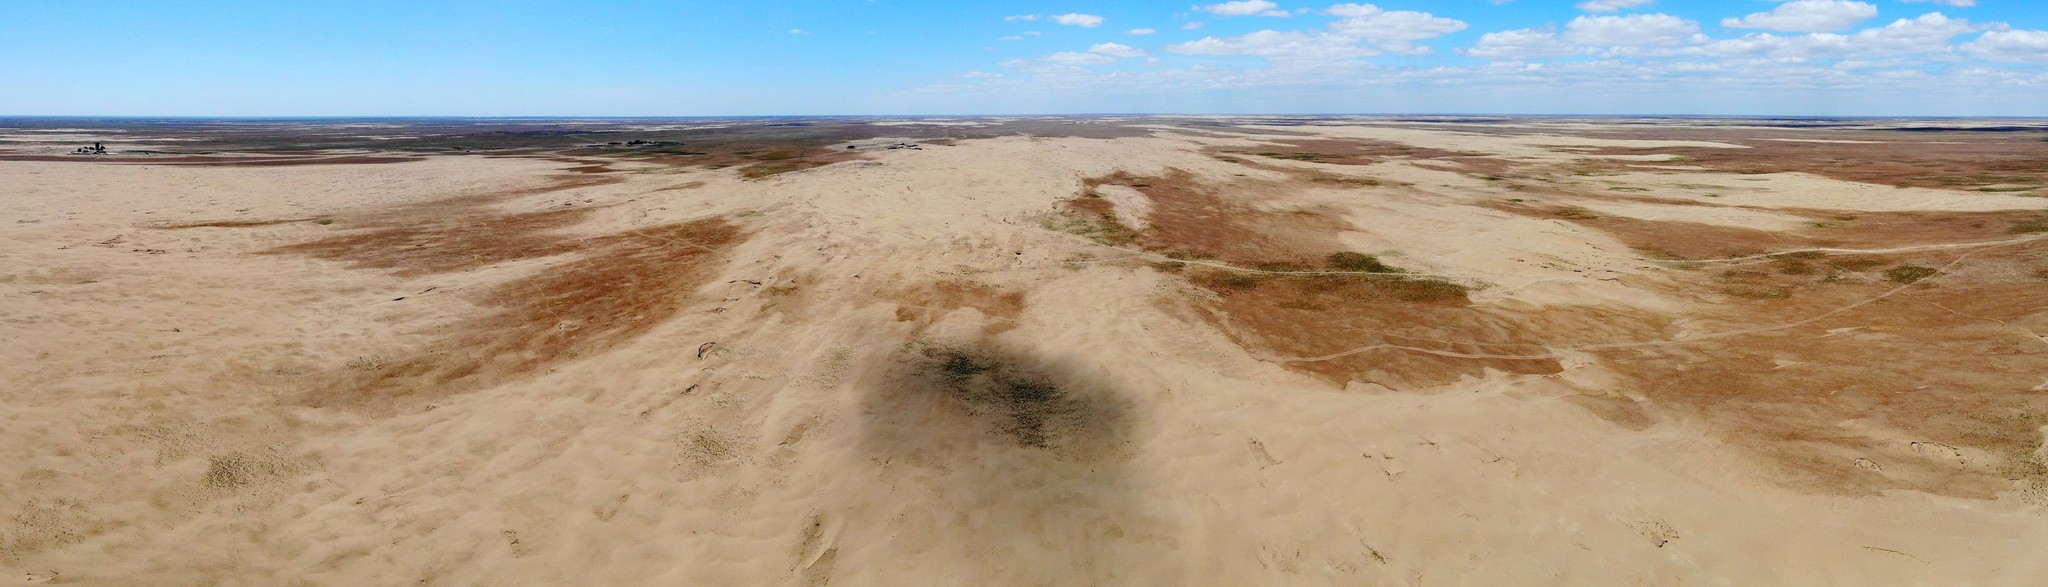 Новые участки земли, превращающейся в пустыню, обнаружили в Астраханской области